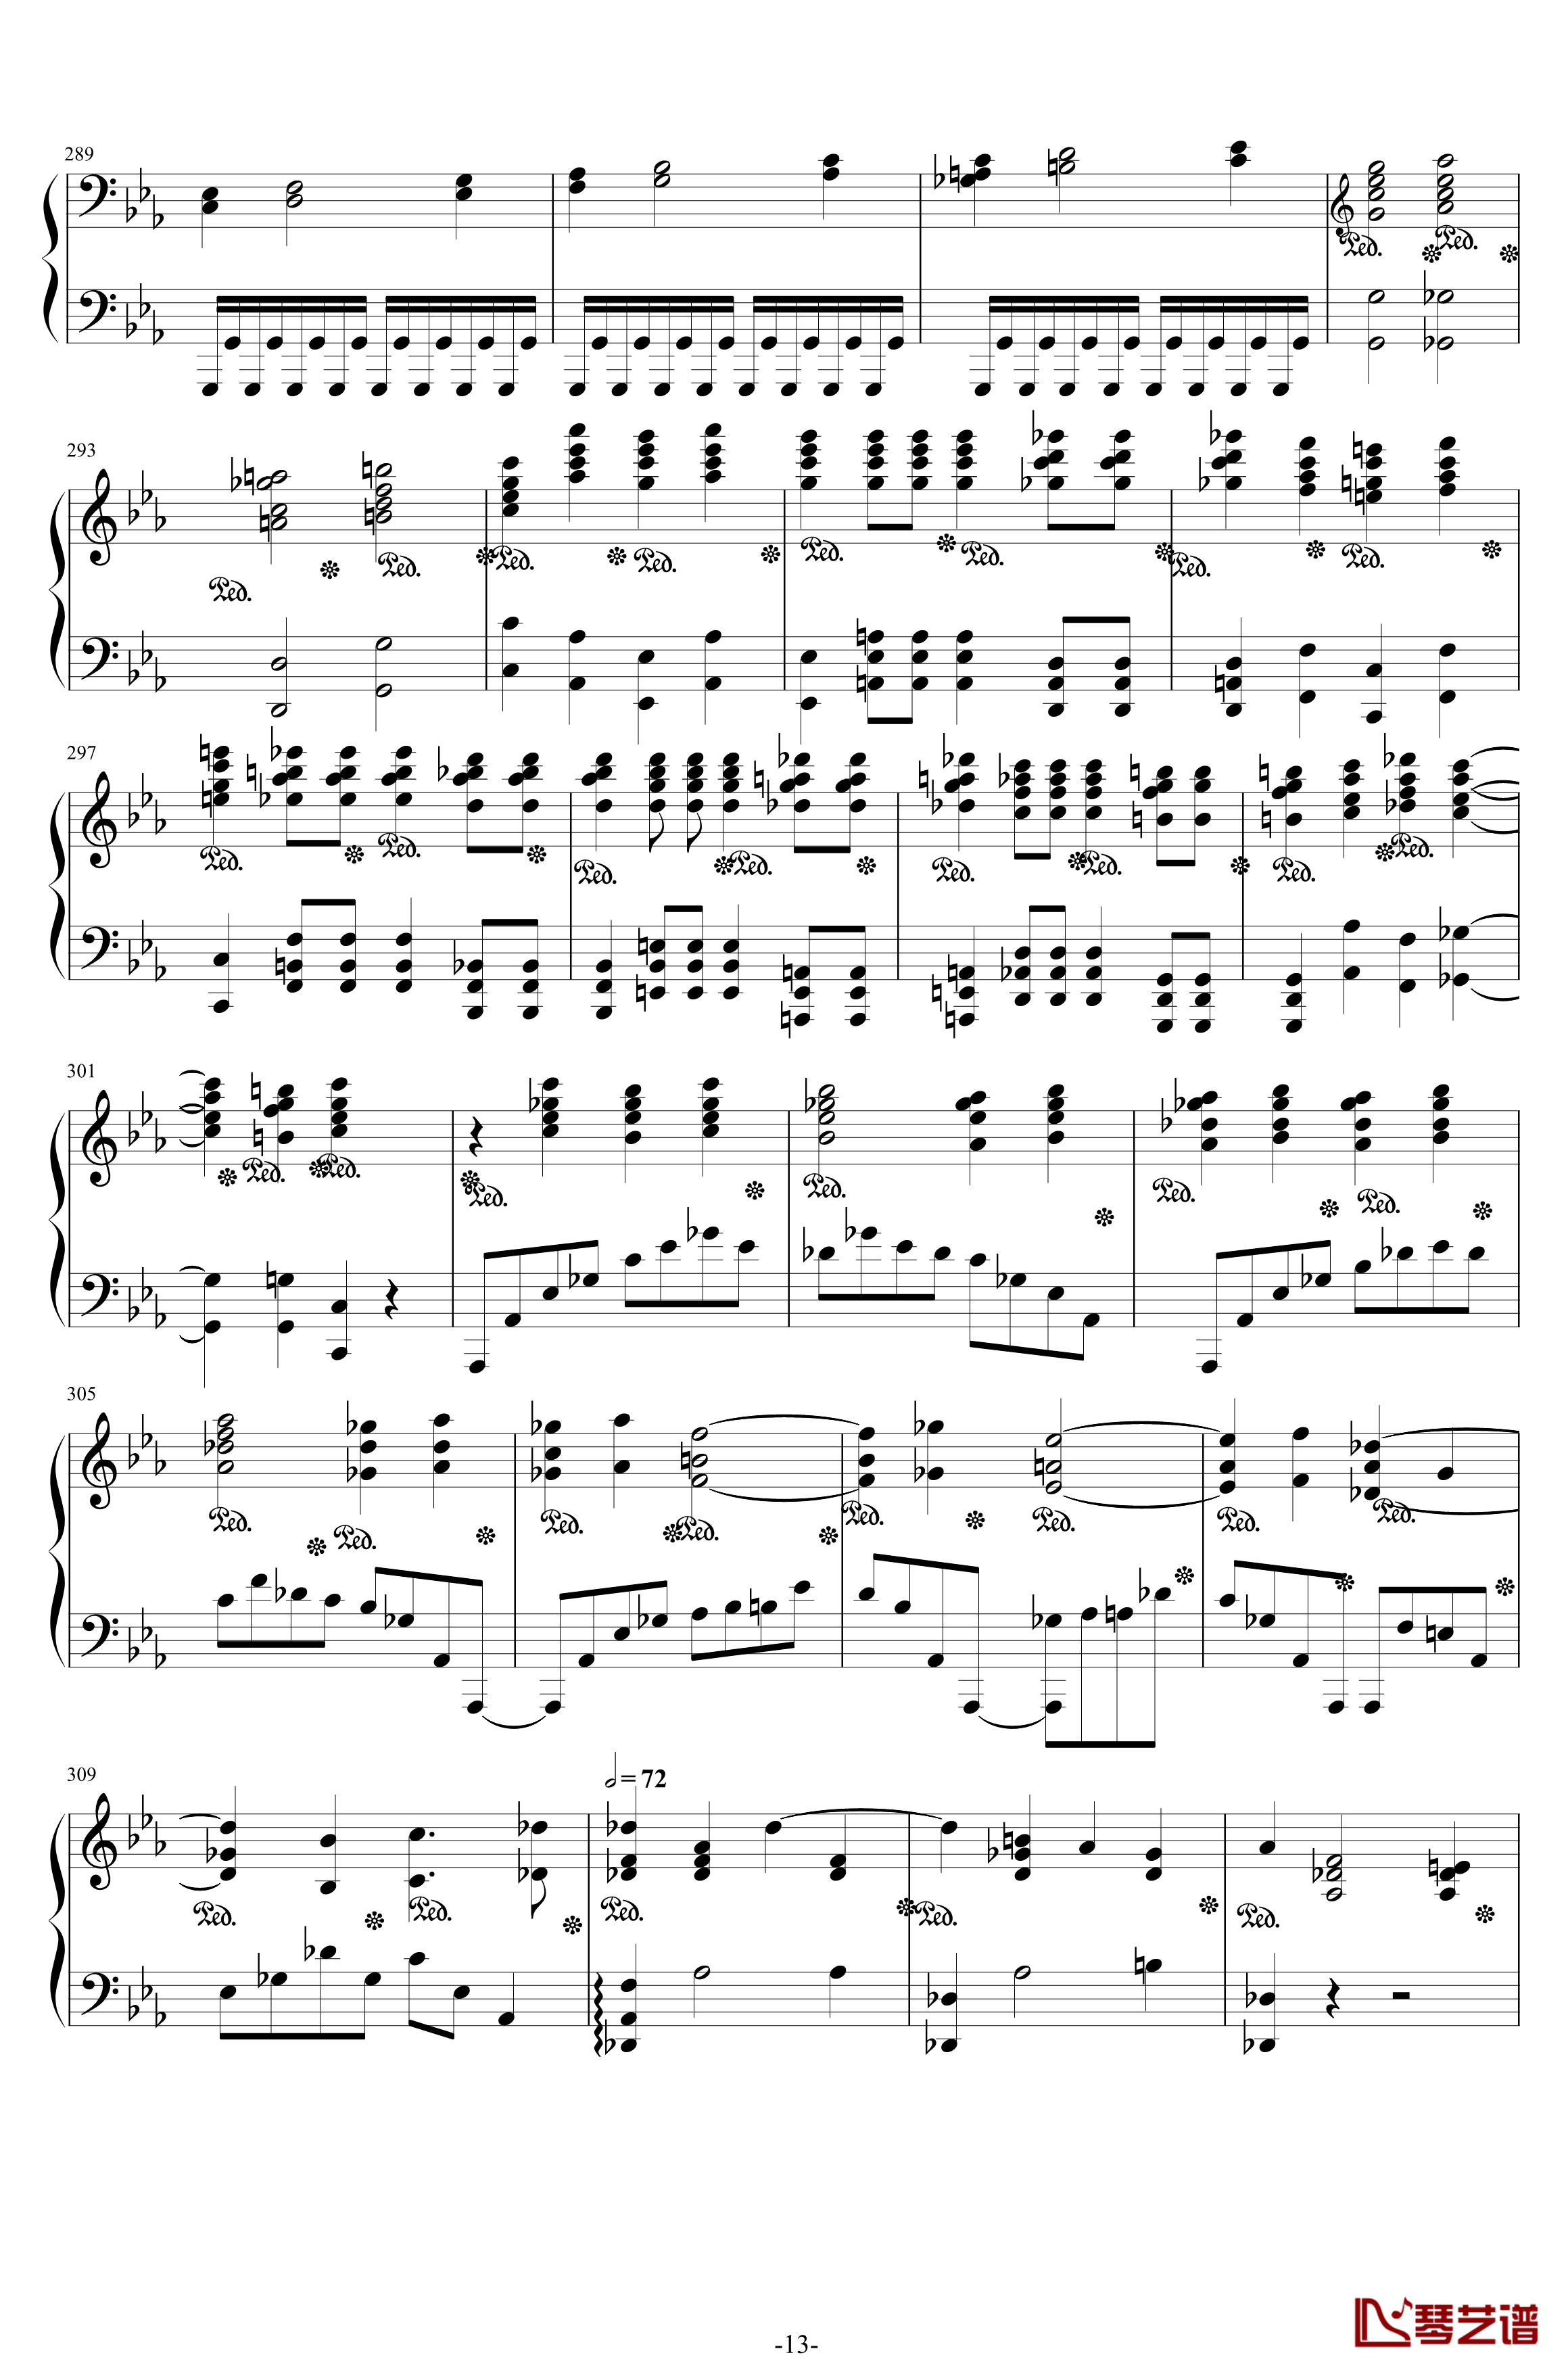 第二钢琴协奏曲钢琴谱-第三乐章独奏版-c小调-拉赫马尼若夫13